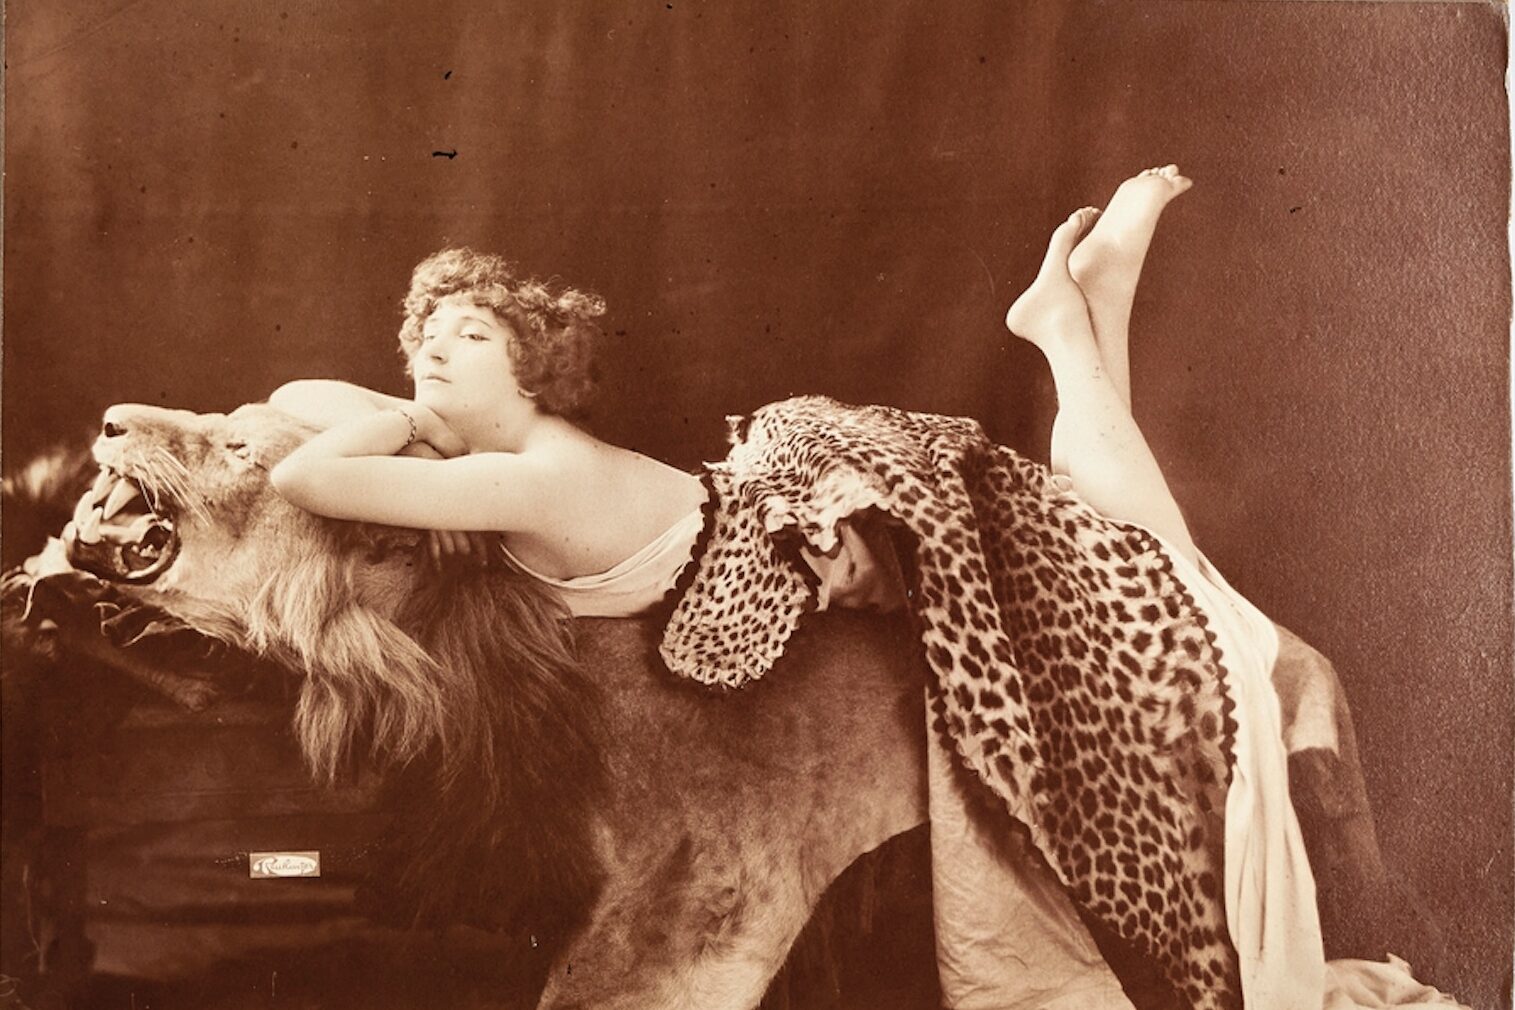 Léopold-Émile Reutlinger (1863-1937), Portrait de Colette à la peau de lion, Paris, 1907. Photographie contrecollée sur carton, tirage d’époque, 20,4 x 28,7 cm. Librairie Le Feu Follet. © Librairie Le Feu Follet